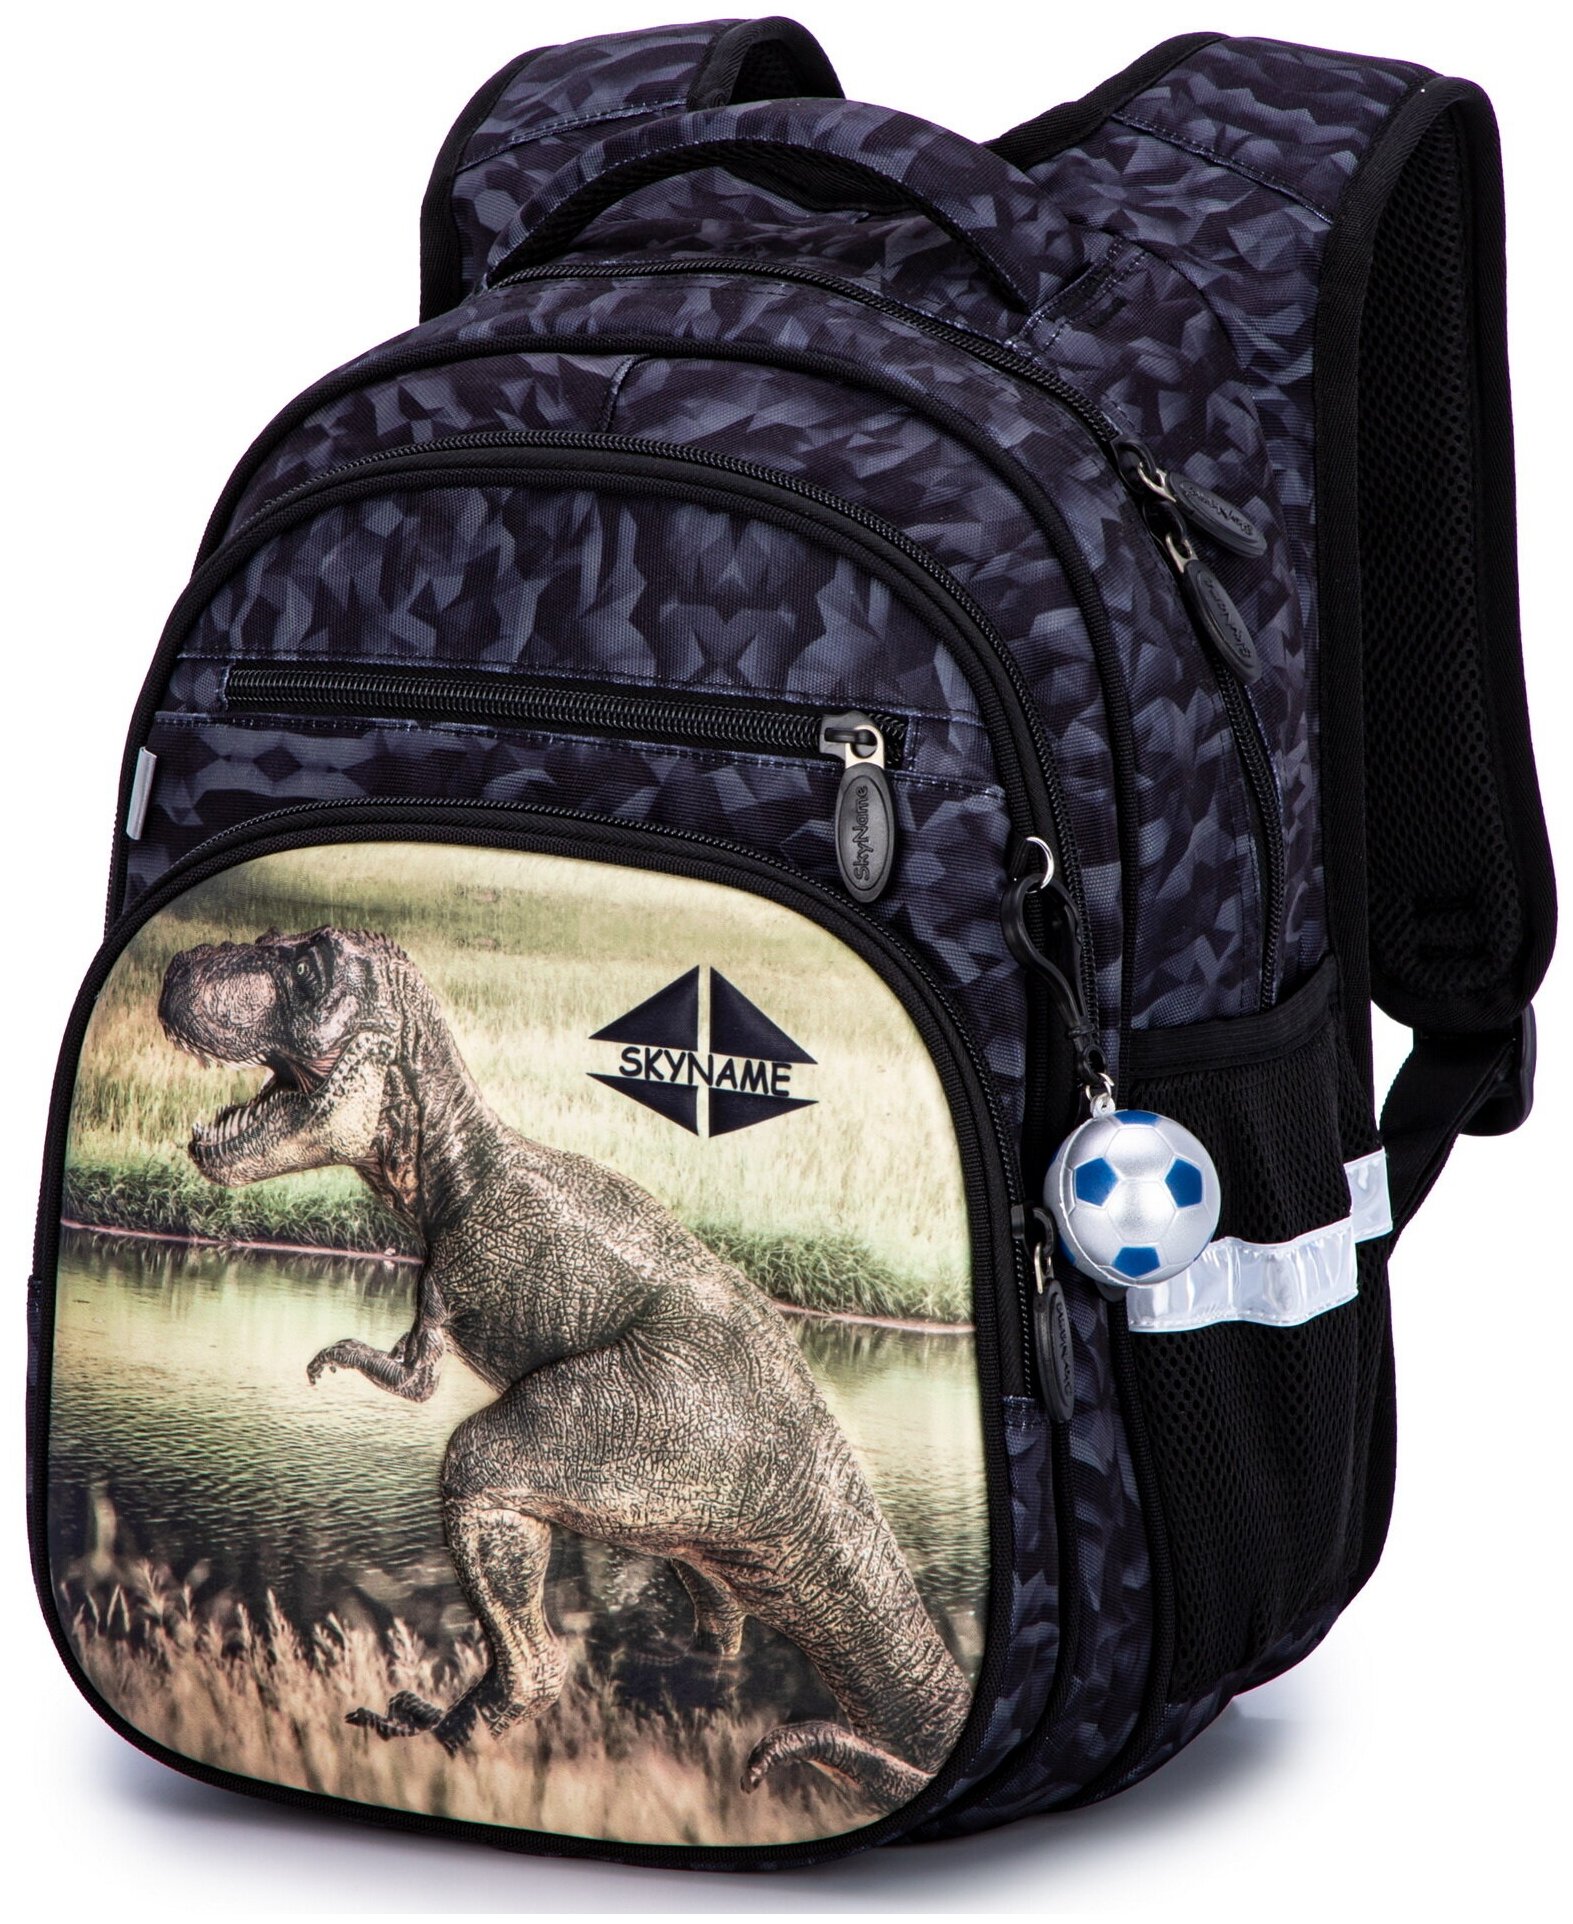 Рюкзак школьный для мальчика с анатомической спинкой для начальной школы, 17 л, SkyName (СкайНейм), + брелок мячик